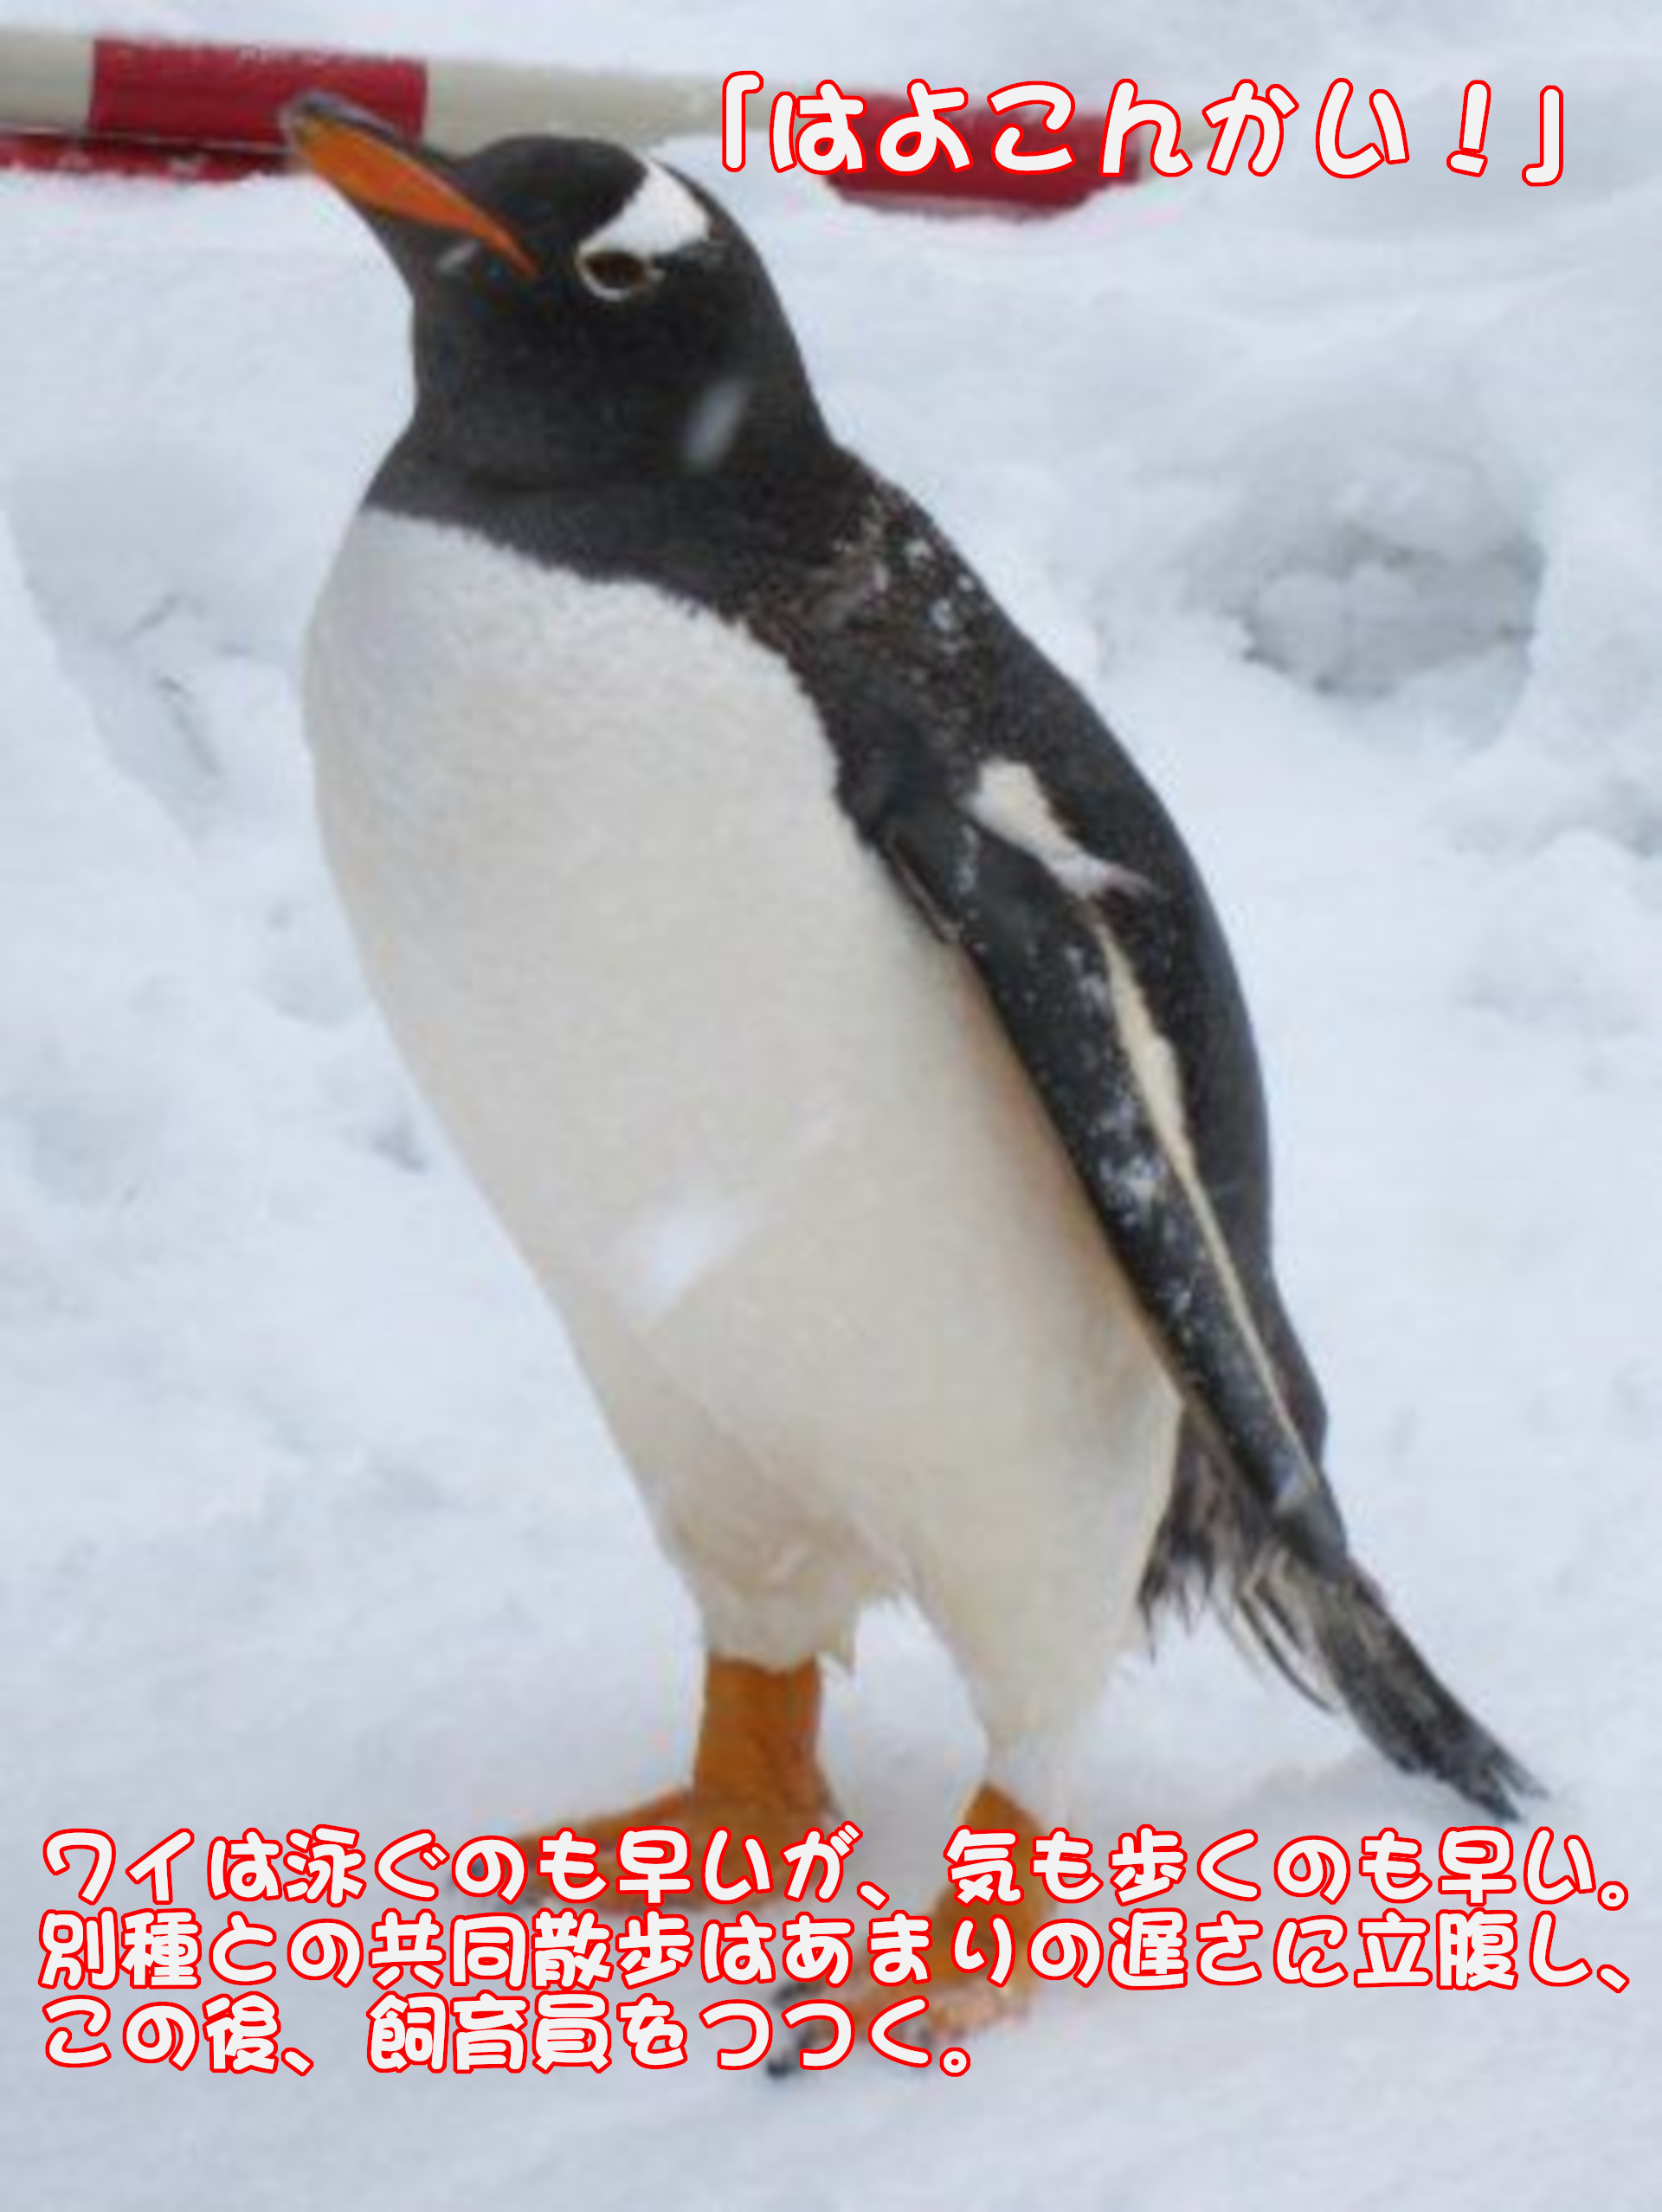 ジェンツーペンギン
「はよこんかい！」
ワイは泳ぐのも早いが、気も歩くのも早い。別種との共同散歩はあまりの遅さに立腹し、この後、飼育員をつつく。